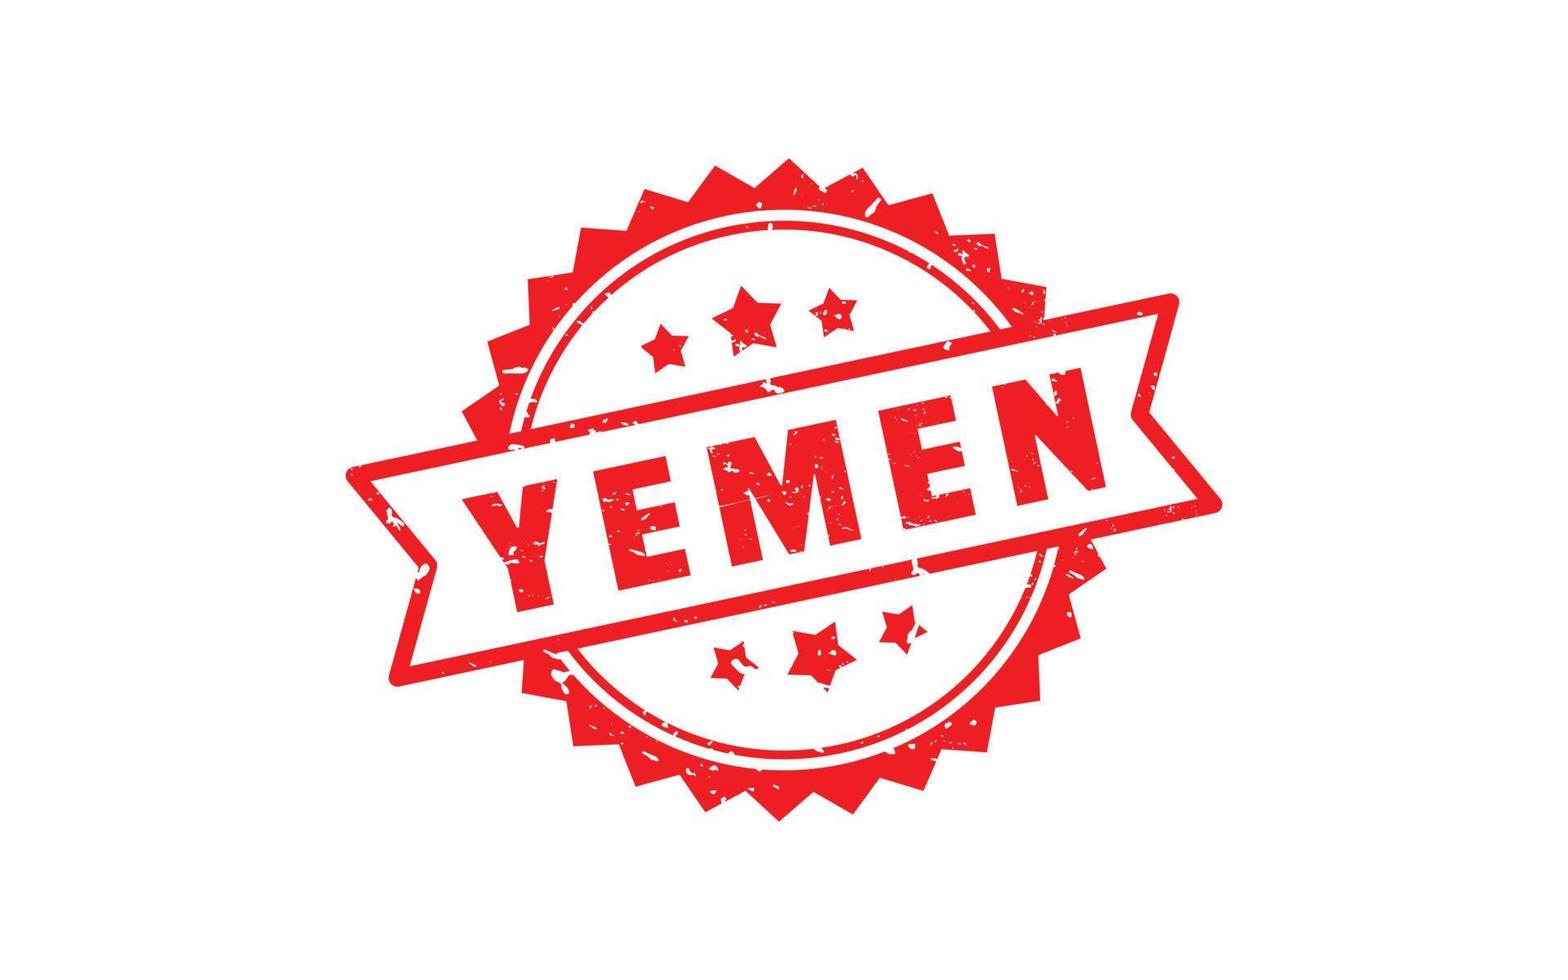 Yémen timbre caoutchouc avec grunge style sur blanc Contexte vecteur